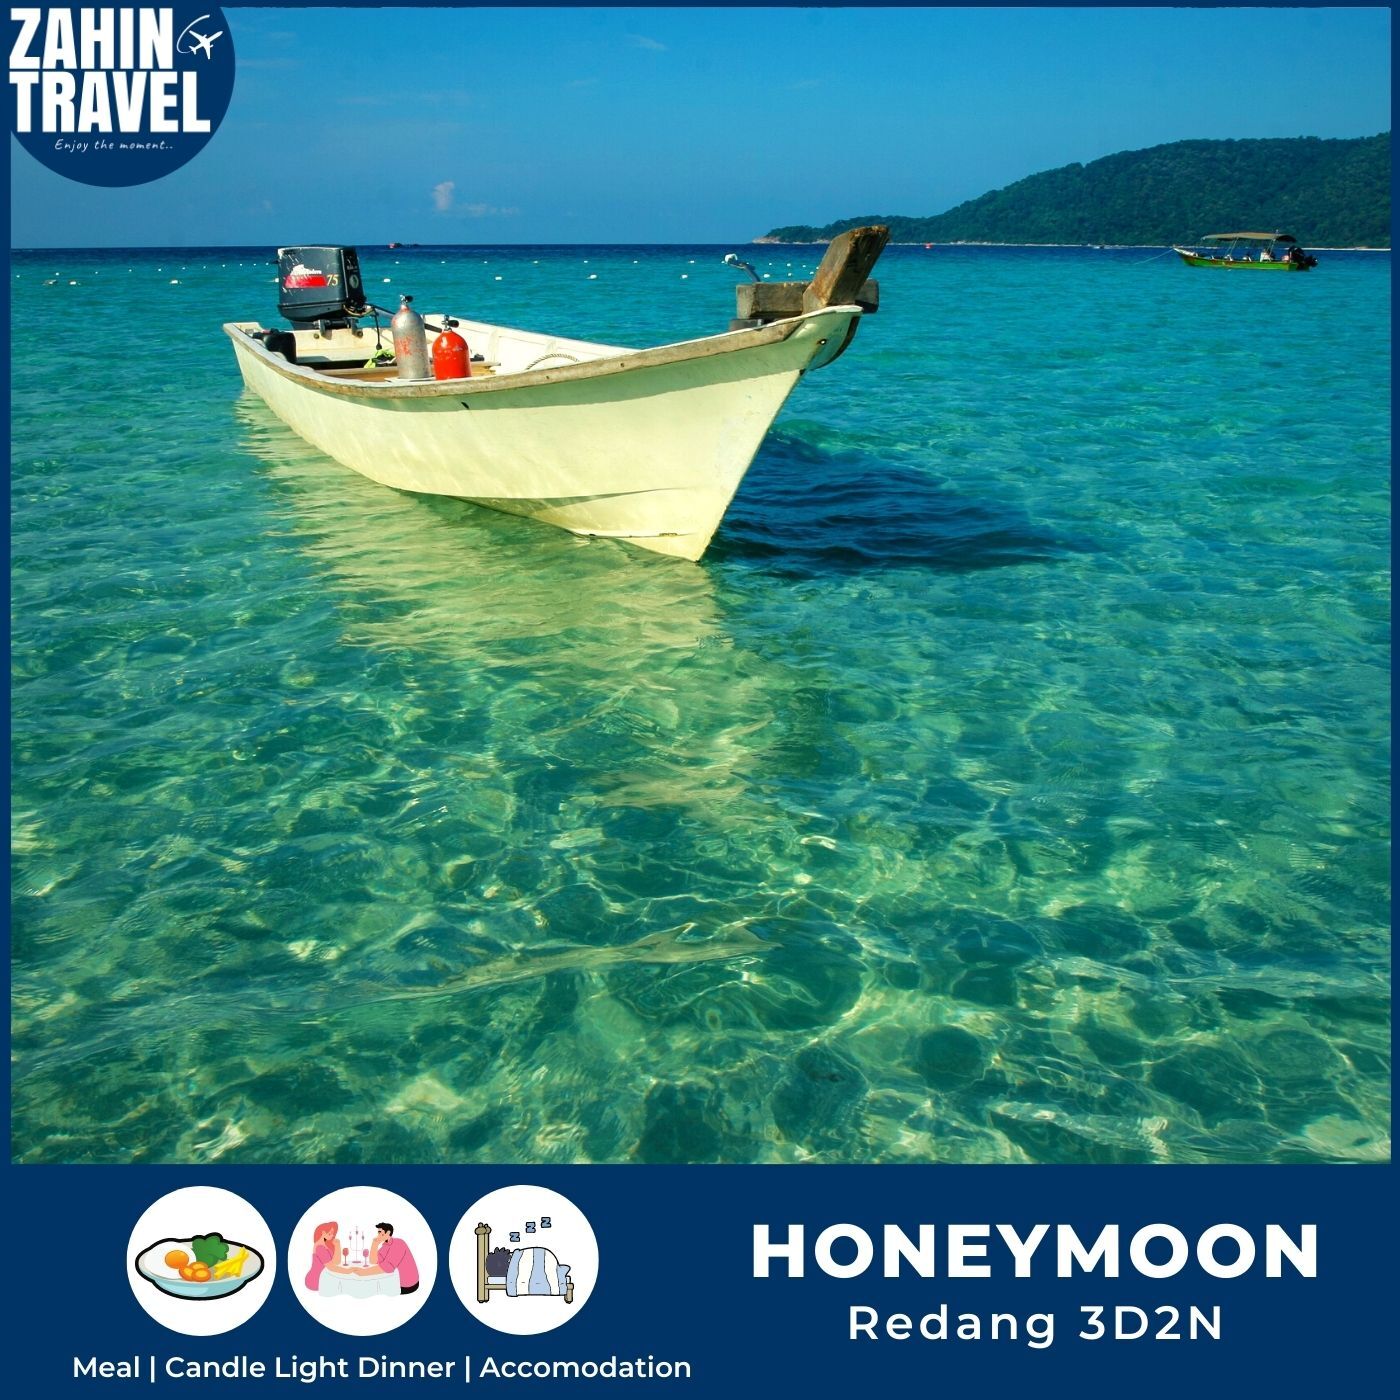 Pakej Honeymoon Pulau Redang Terengganu 3 Hari 2 Malam